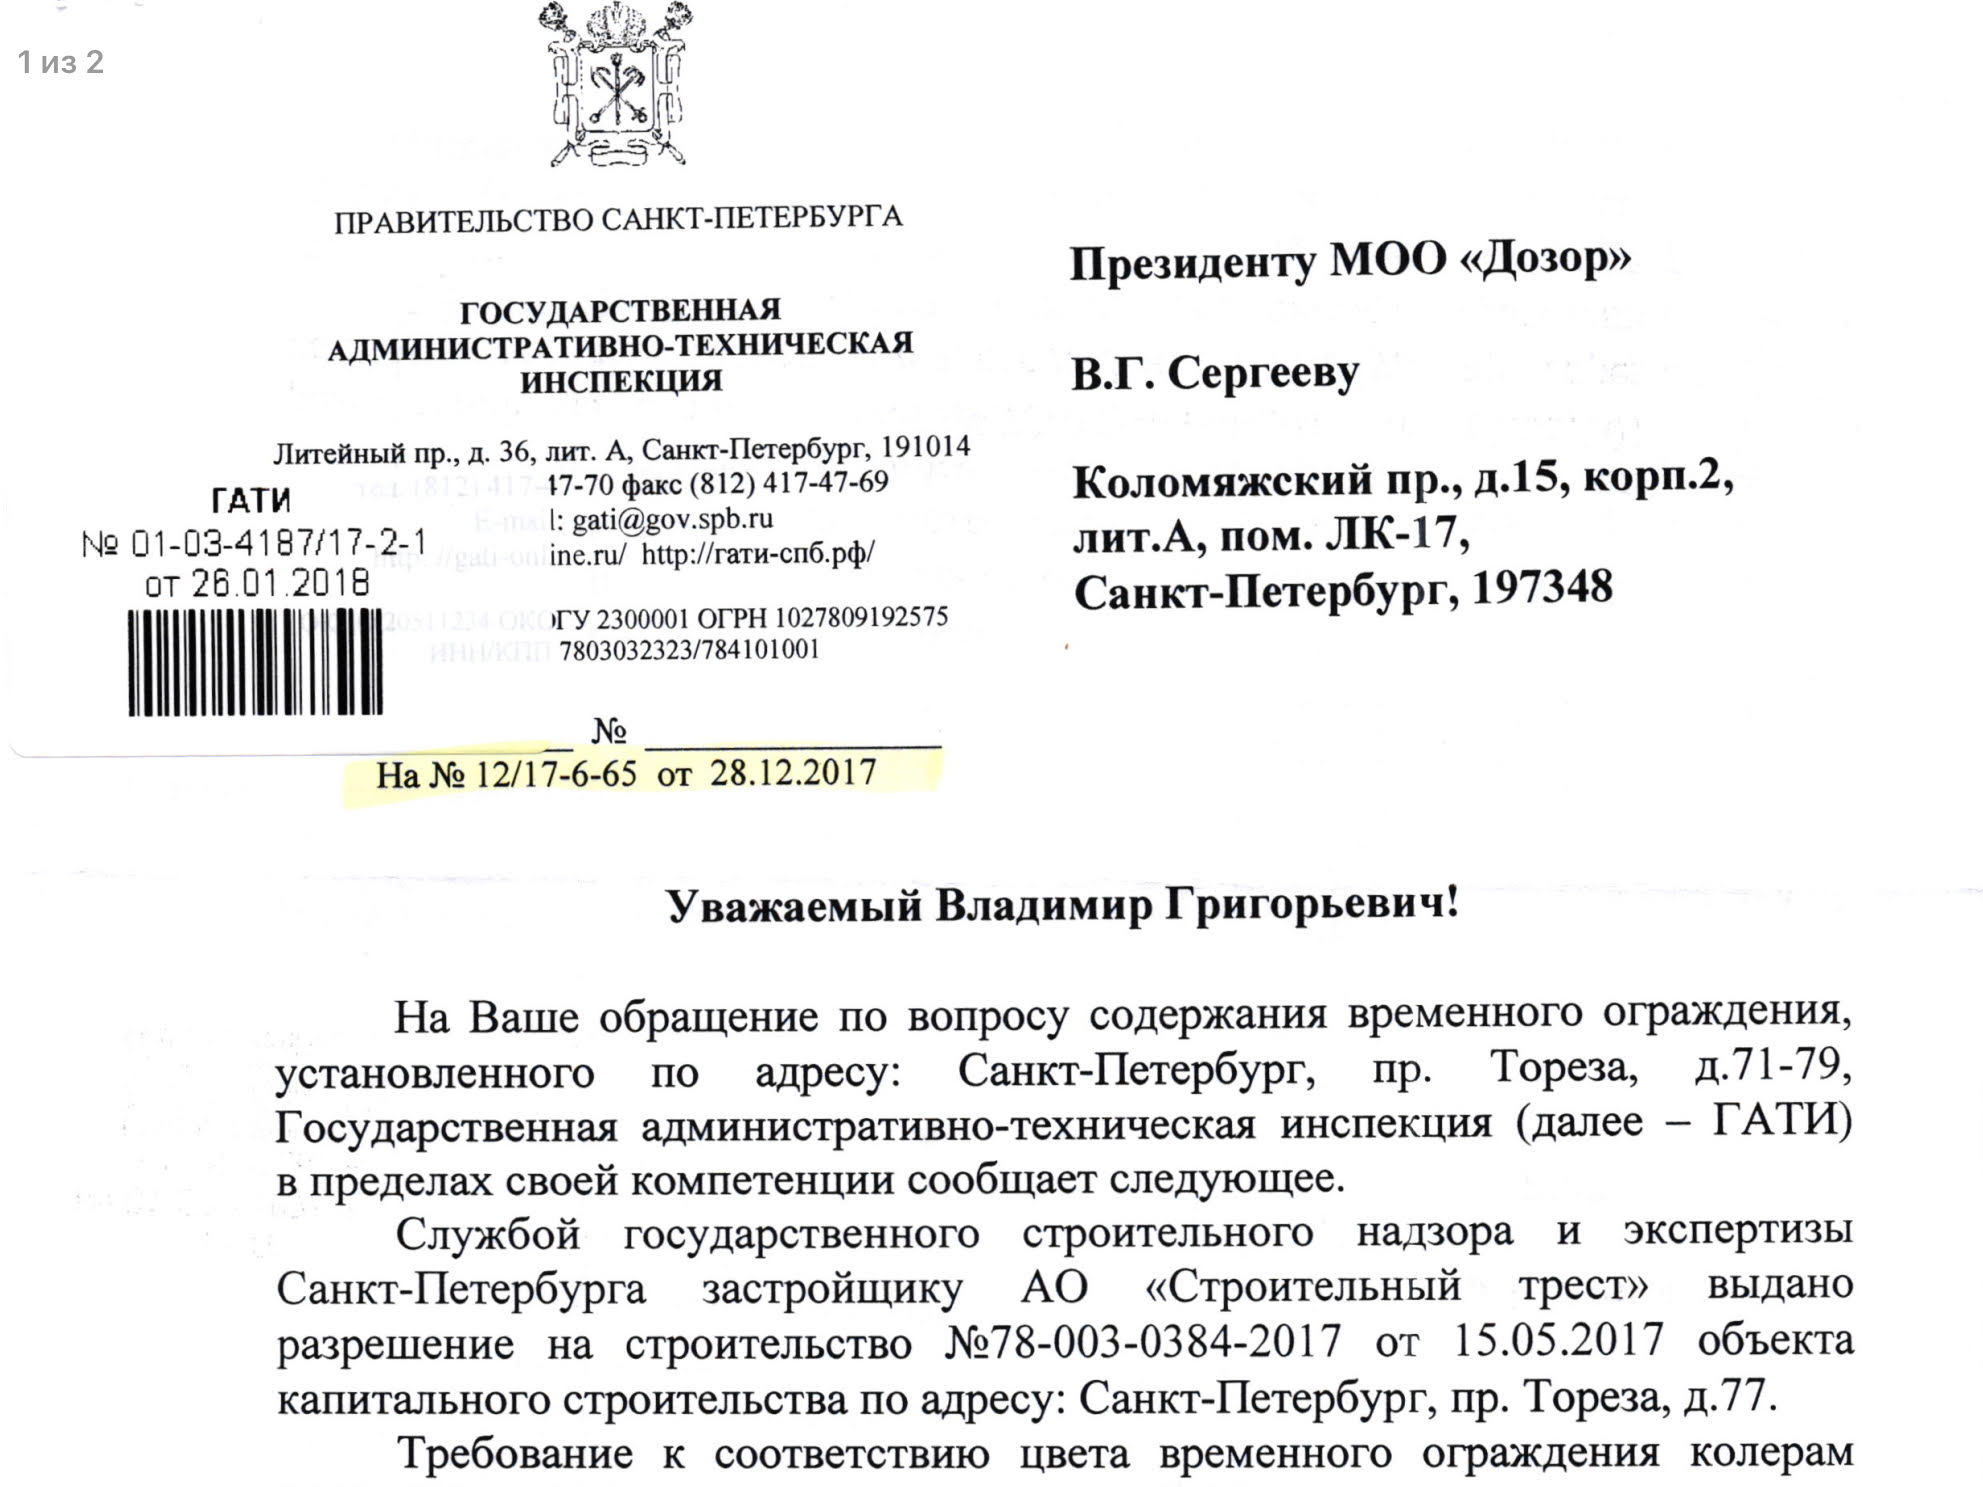 Ответ ГАТИ Санкт-Петербурга на заявдение МОО “Дозор” от 28.12.2017 г. о применении мер административного реагирования по фактам нарушения действующего законодательства.